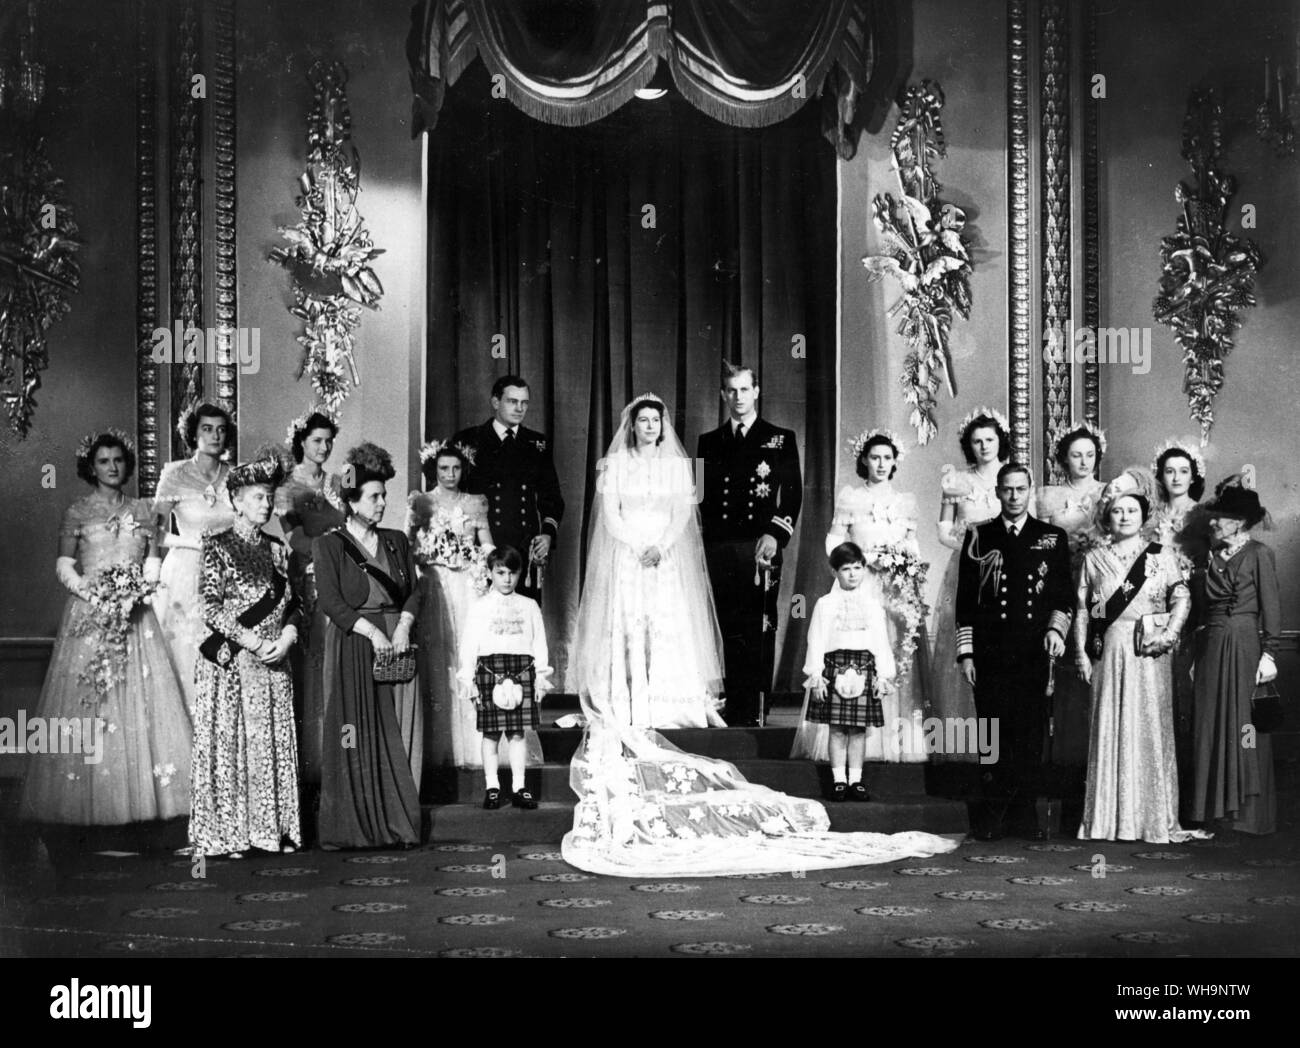 20 Novembre 1947 : la princesse Elizabeth épouse le Prince Philip (plus tard la reine Elizabeth II et le duc d'Édimbourg). Le roi George VI et la reine Elizabeth (la reine mère) sont à l'angle inférieur droit de la photo. Banque D'Images